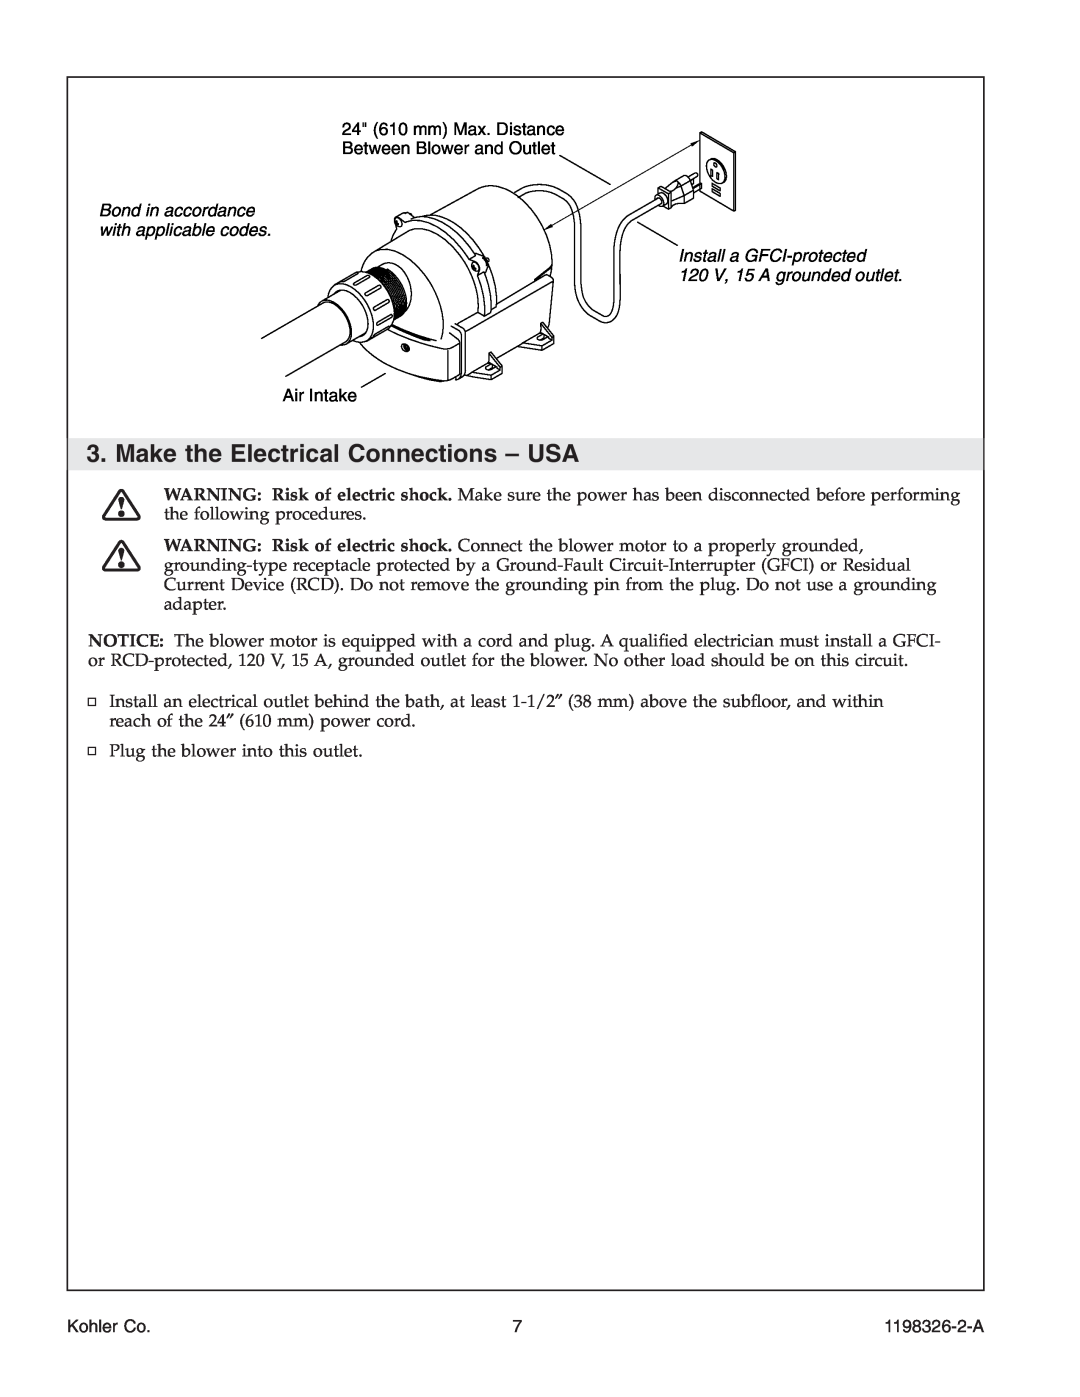 Kohler 1198326-2-A manual Make the Electrical Connections - USA, 120 V, 15 A grounded outlet, Kohler Co 